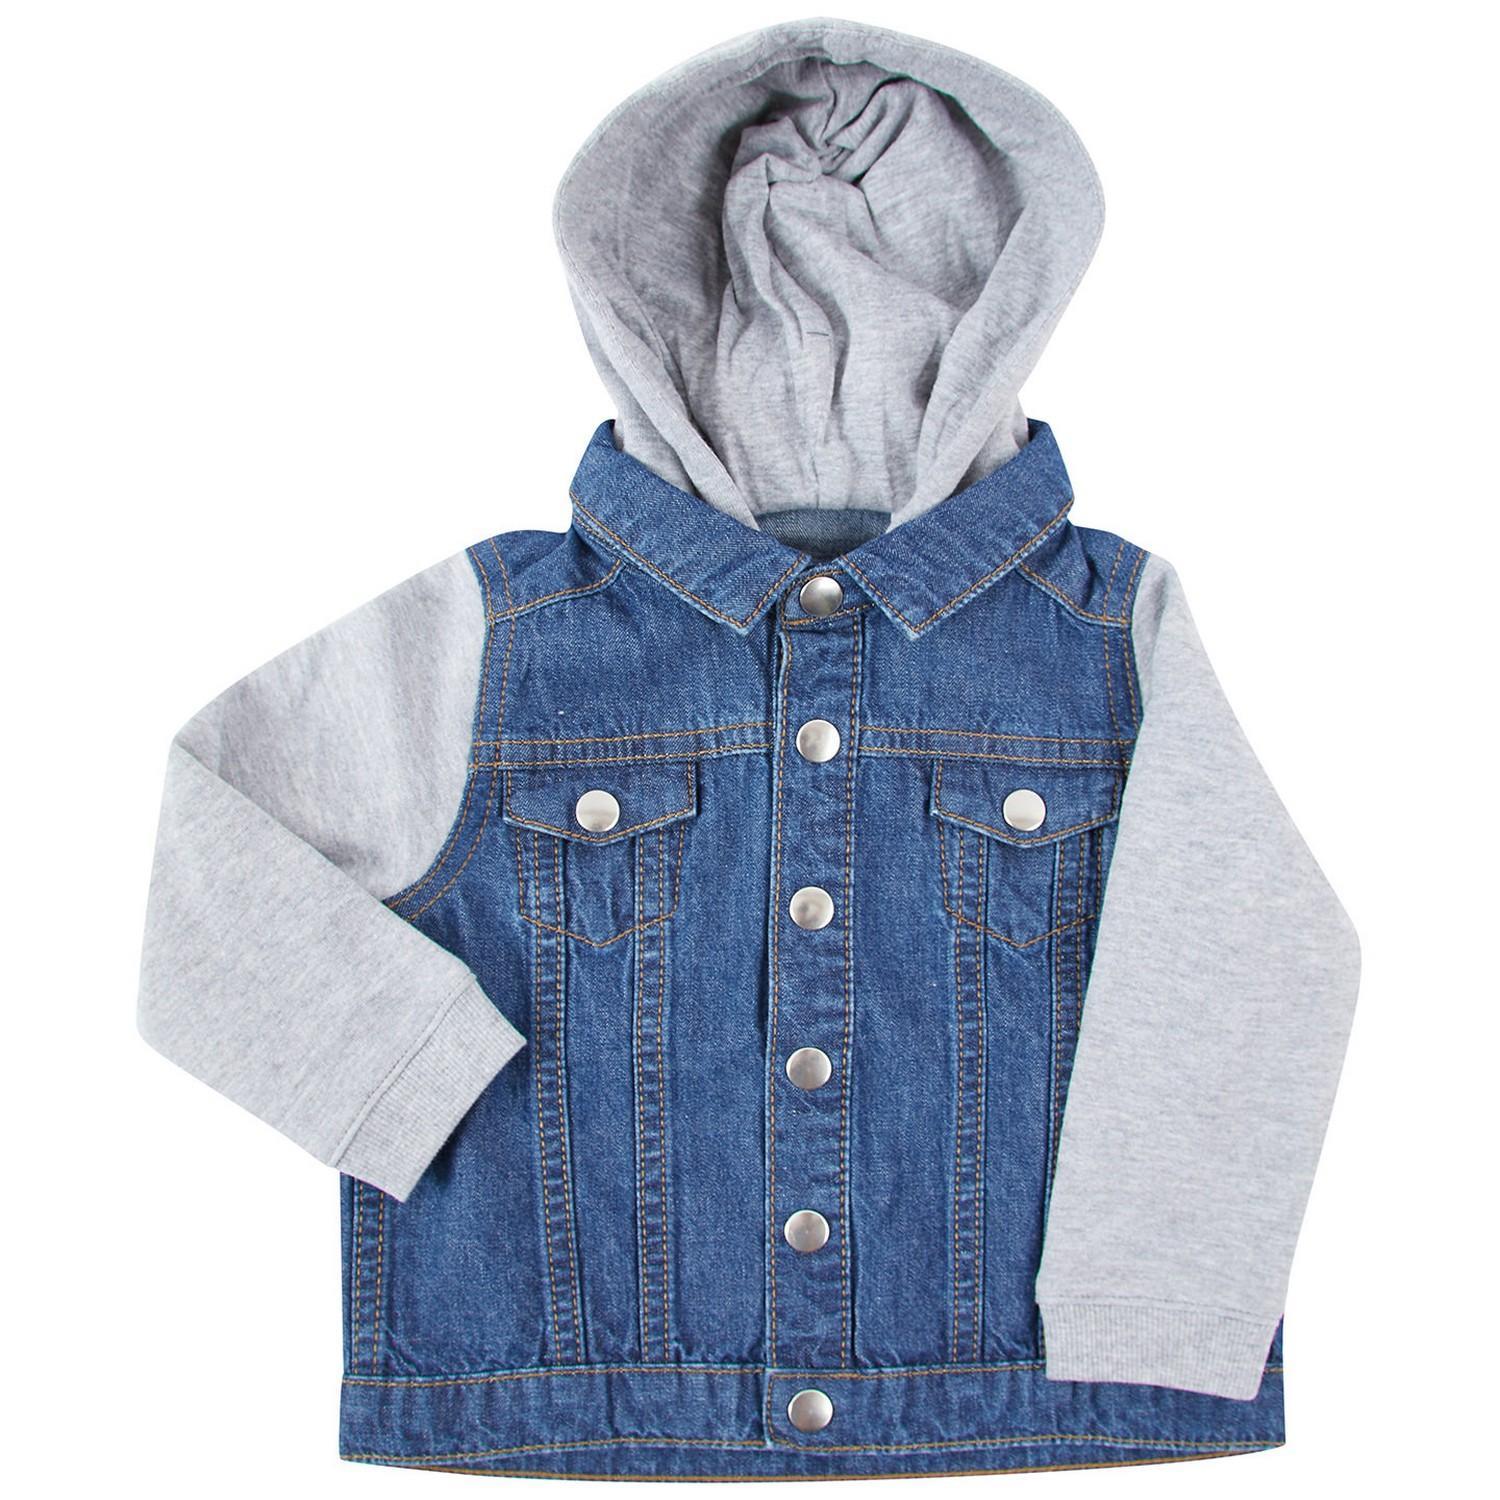 Larkwood Childrens/Kids Denim Jacket (Blue) (12-18 Months)